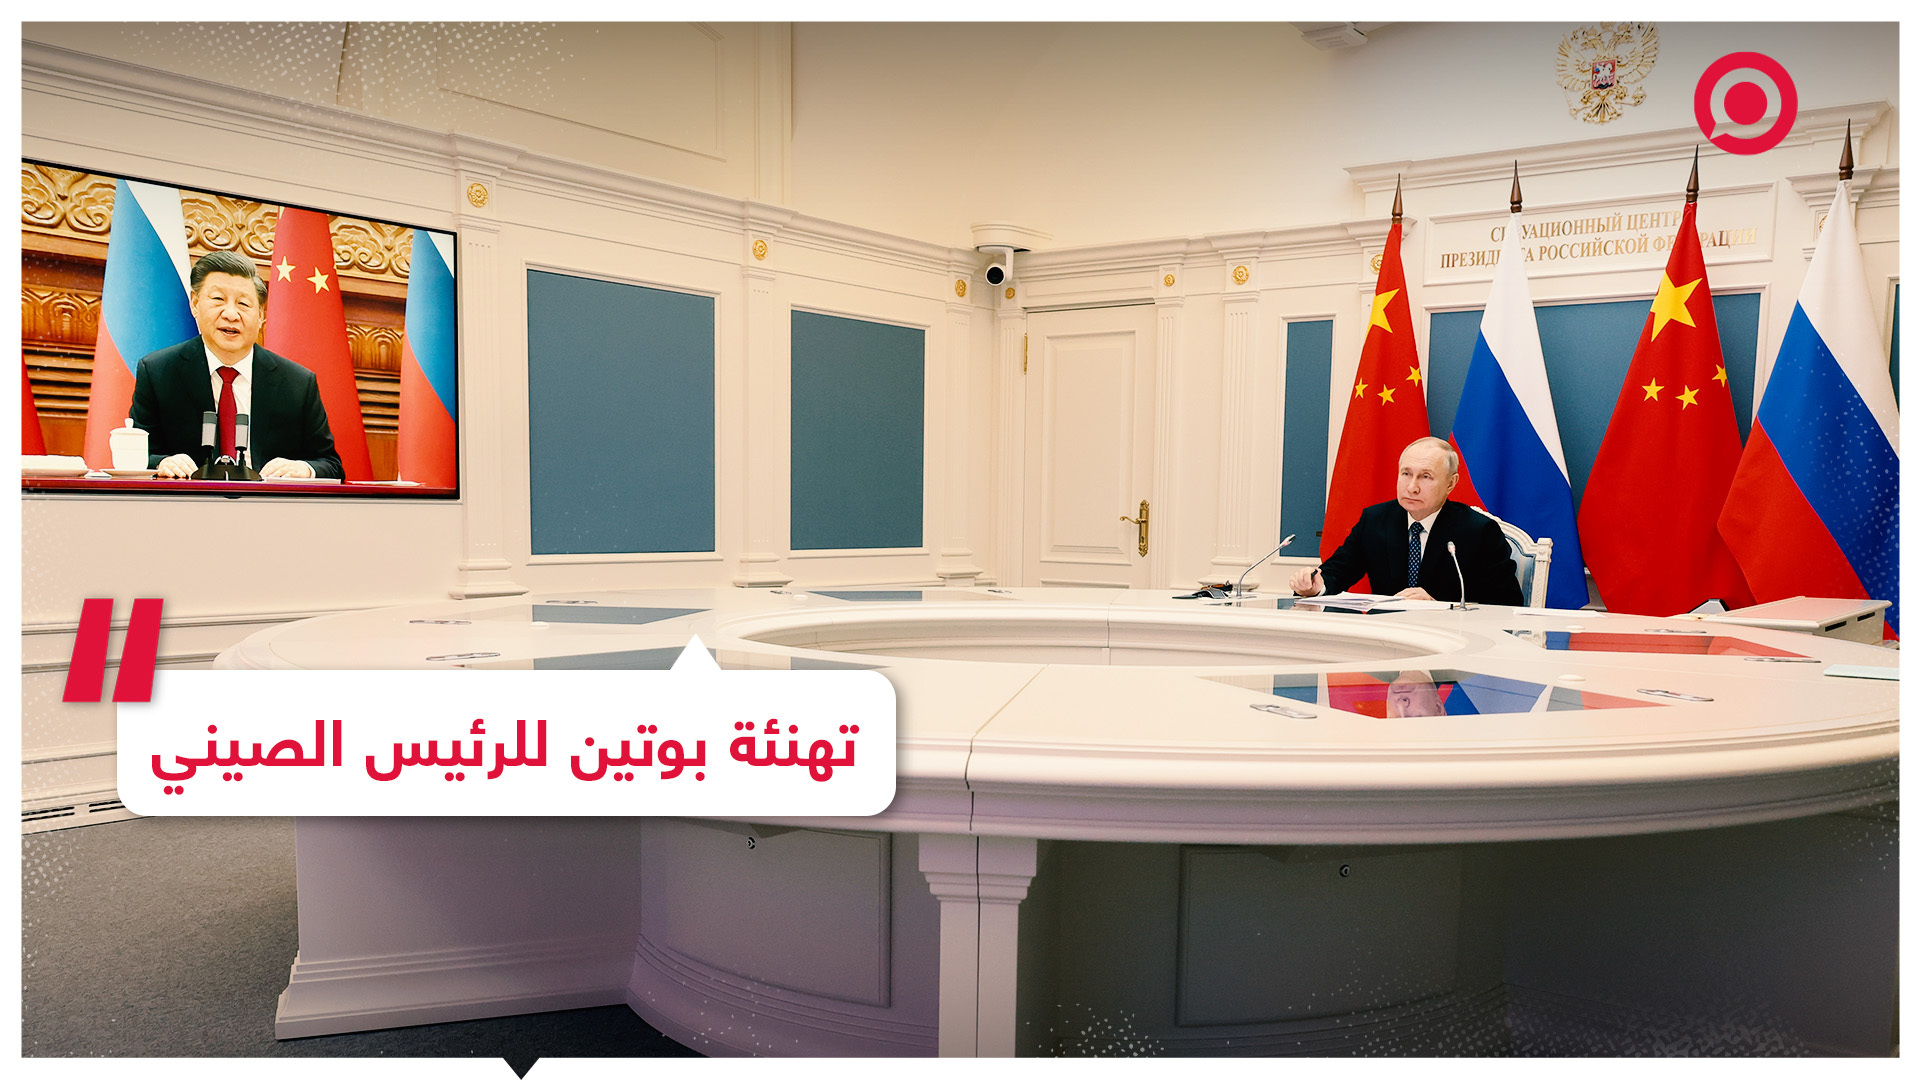 الرئيس الروسي يهنئ الرئيس الصيني